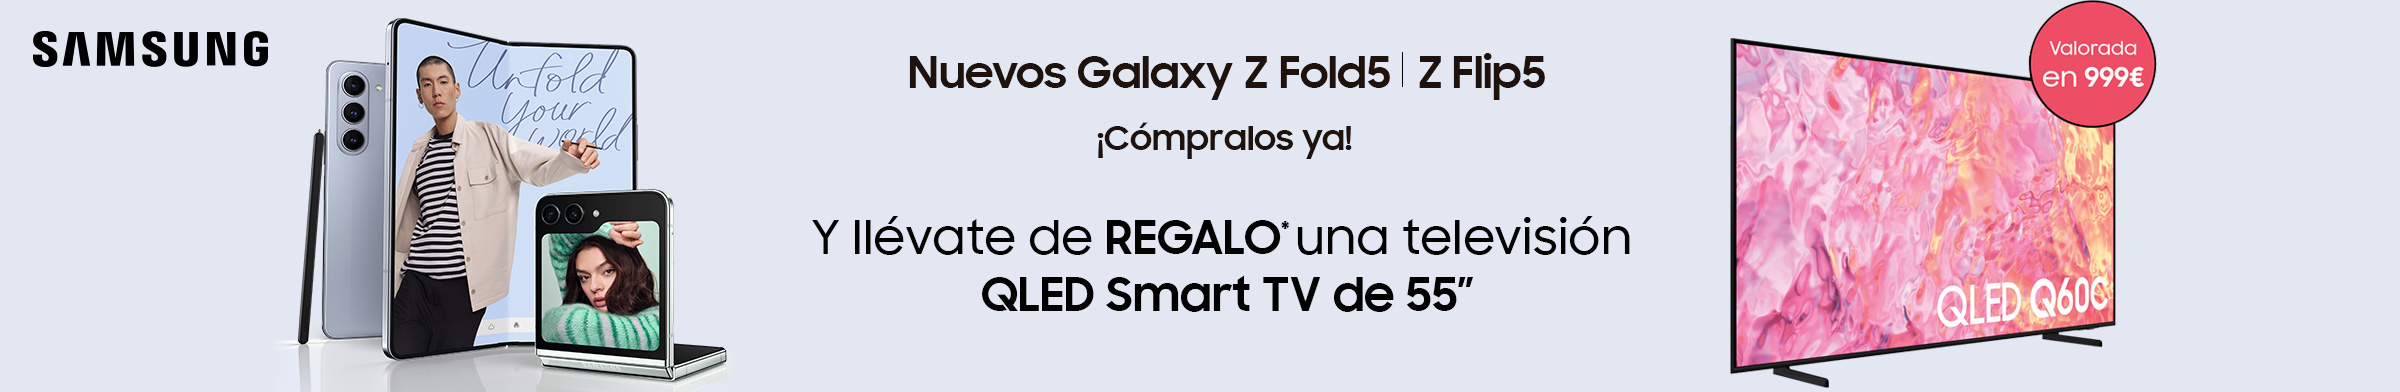 Compra ahora tu Samsung Galaxy Z Fold5 y Z Flip5y llévate una TV de Regalo